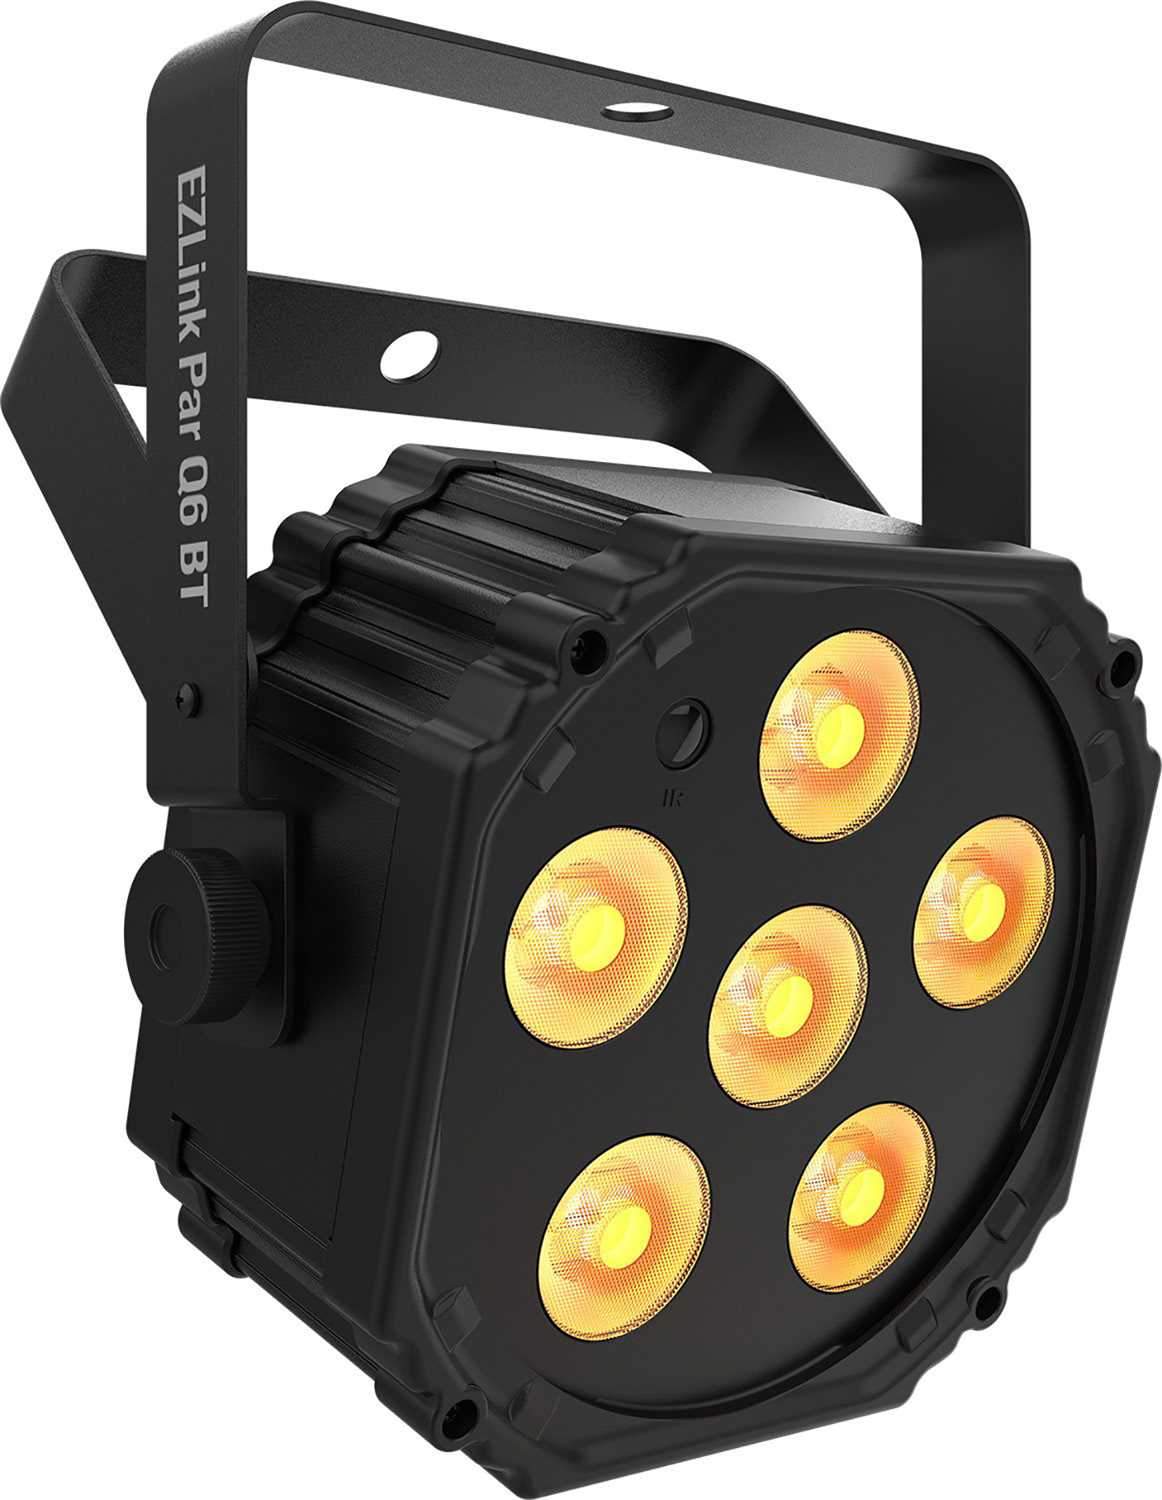 Chauvet EZlink Par Q6 BT Wash Light 4-Pack with Gator Bag - PSSL ProSound and Stage Lighting